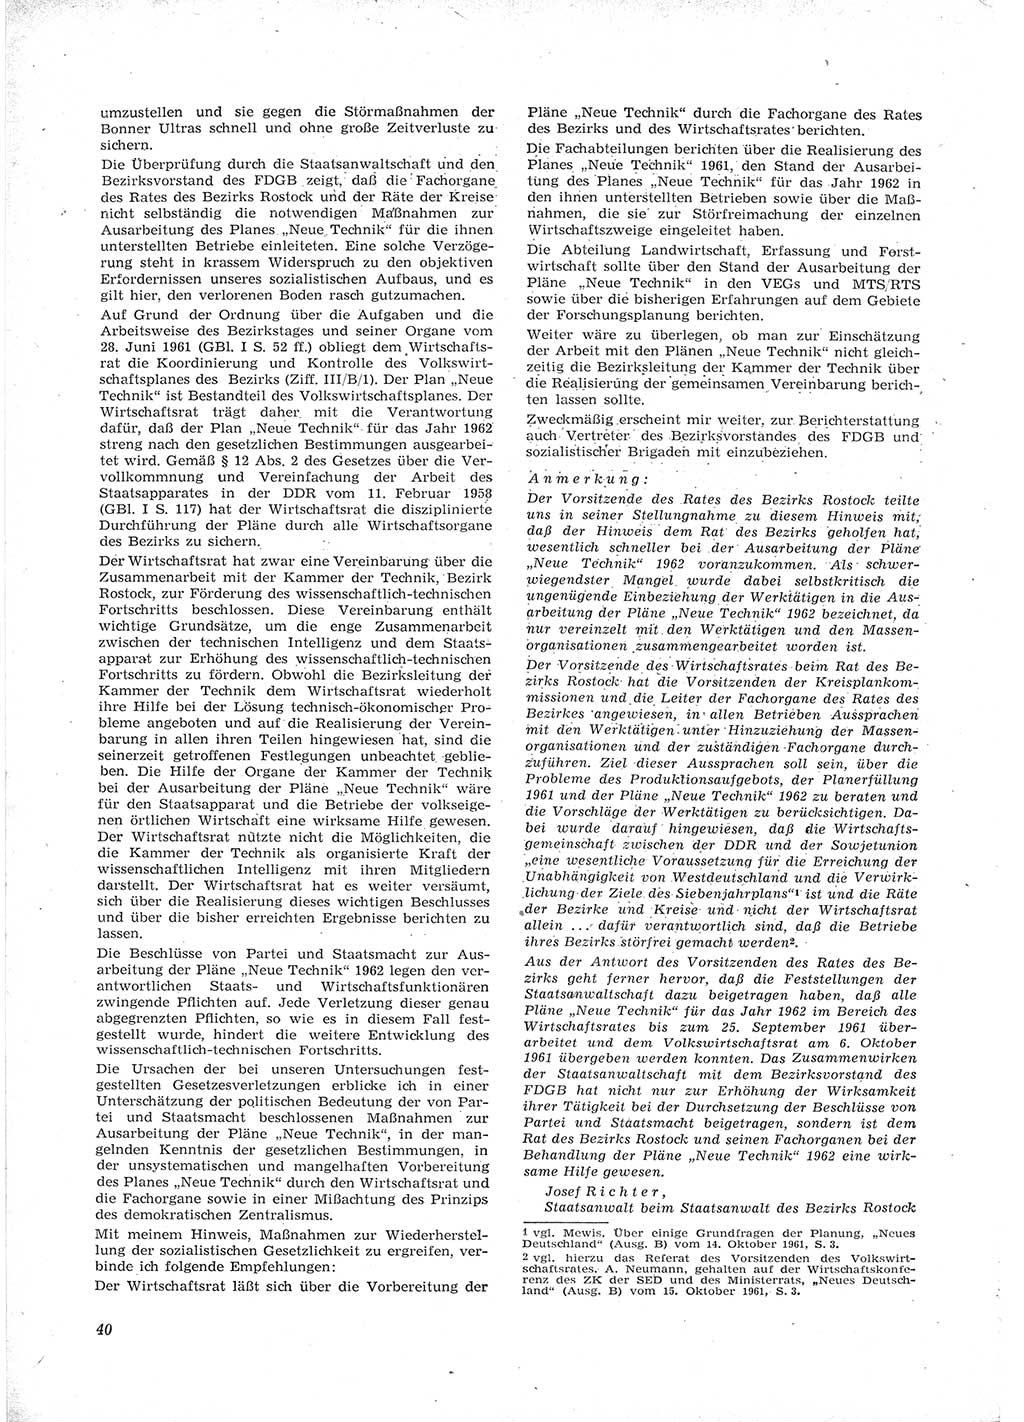 Neue Justiz (NJ), Zeitschrift für Recht und Rechtswissenschaft [Deutsche Demokratische Republik (DDR)], 16. Jahrgang 1962, Seite 40 (NJ DDR 1962, S. 40)